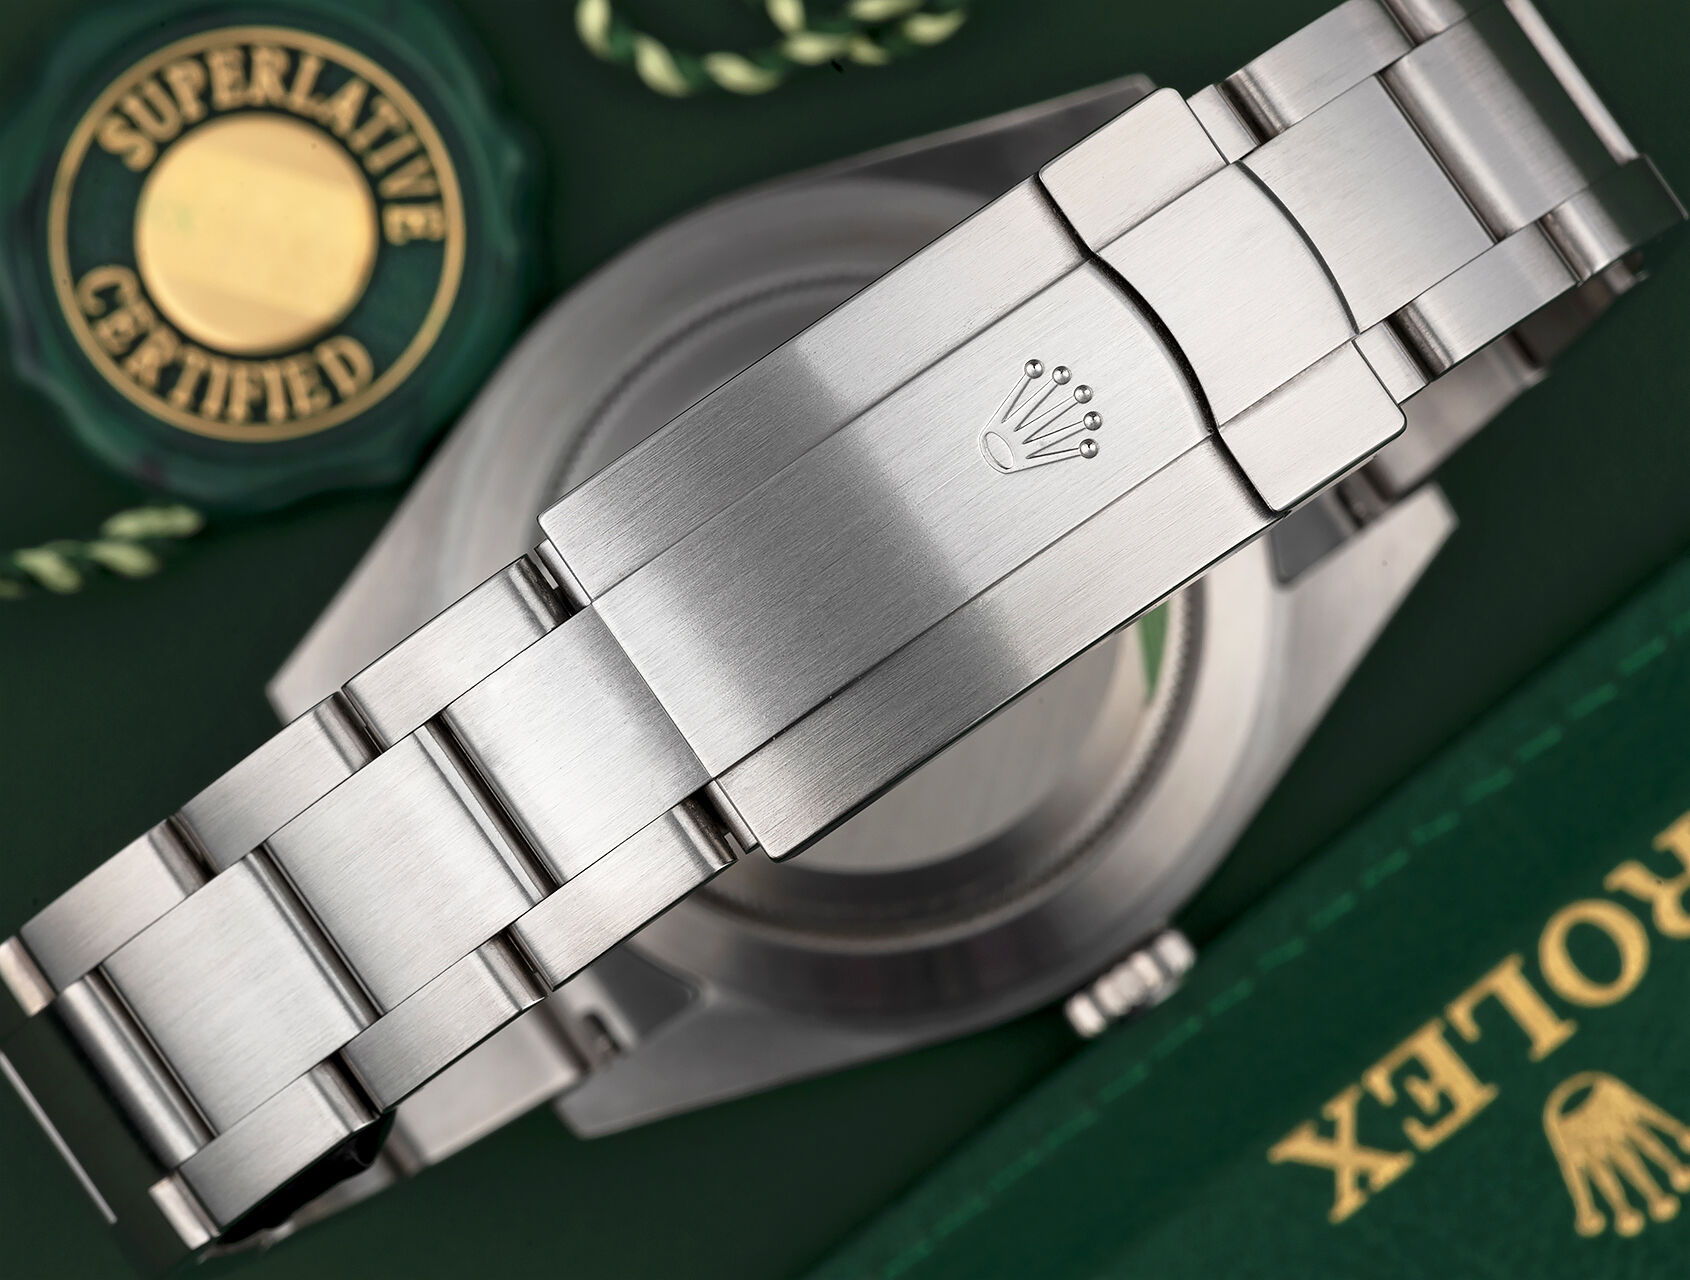 ref 114300 | 114300 - Box & Certificate | Rolex Oyster Perpetual